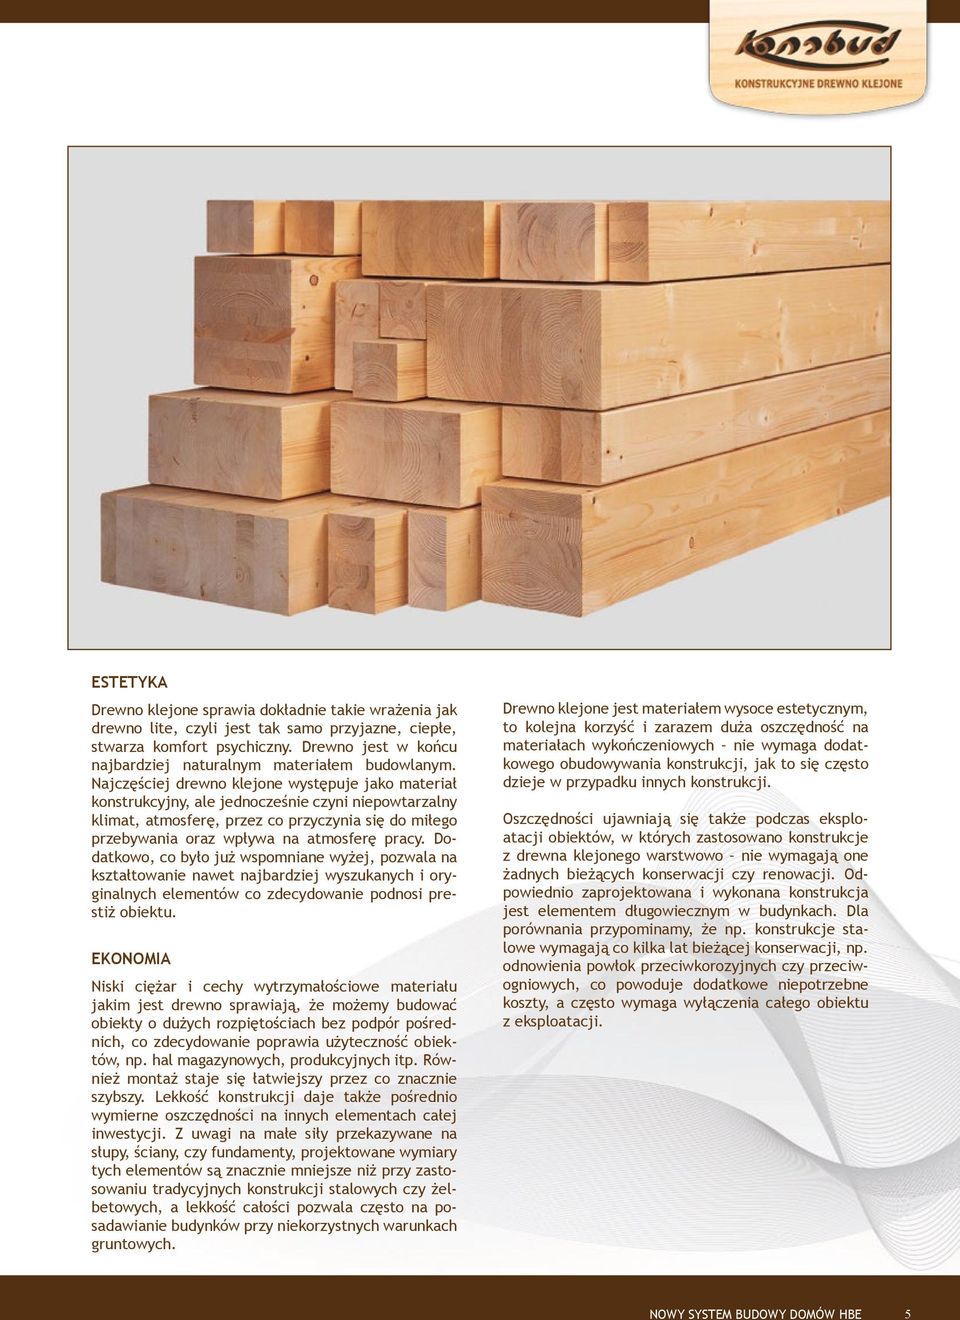 Najczęściej drewno klejone występuje jako materiał konstrukcyjny, ale jednocześnie czyni niepowtarzalny klimat, atmosferę, przez co przyczynia się do miłego przebywania oraz wpływa na atmosferę pracy.